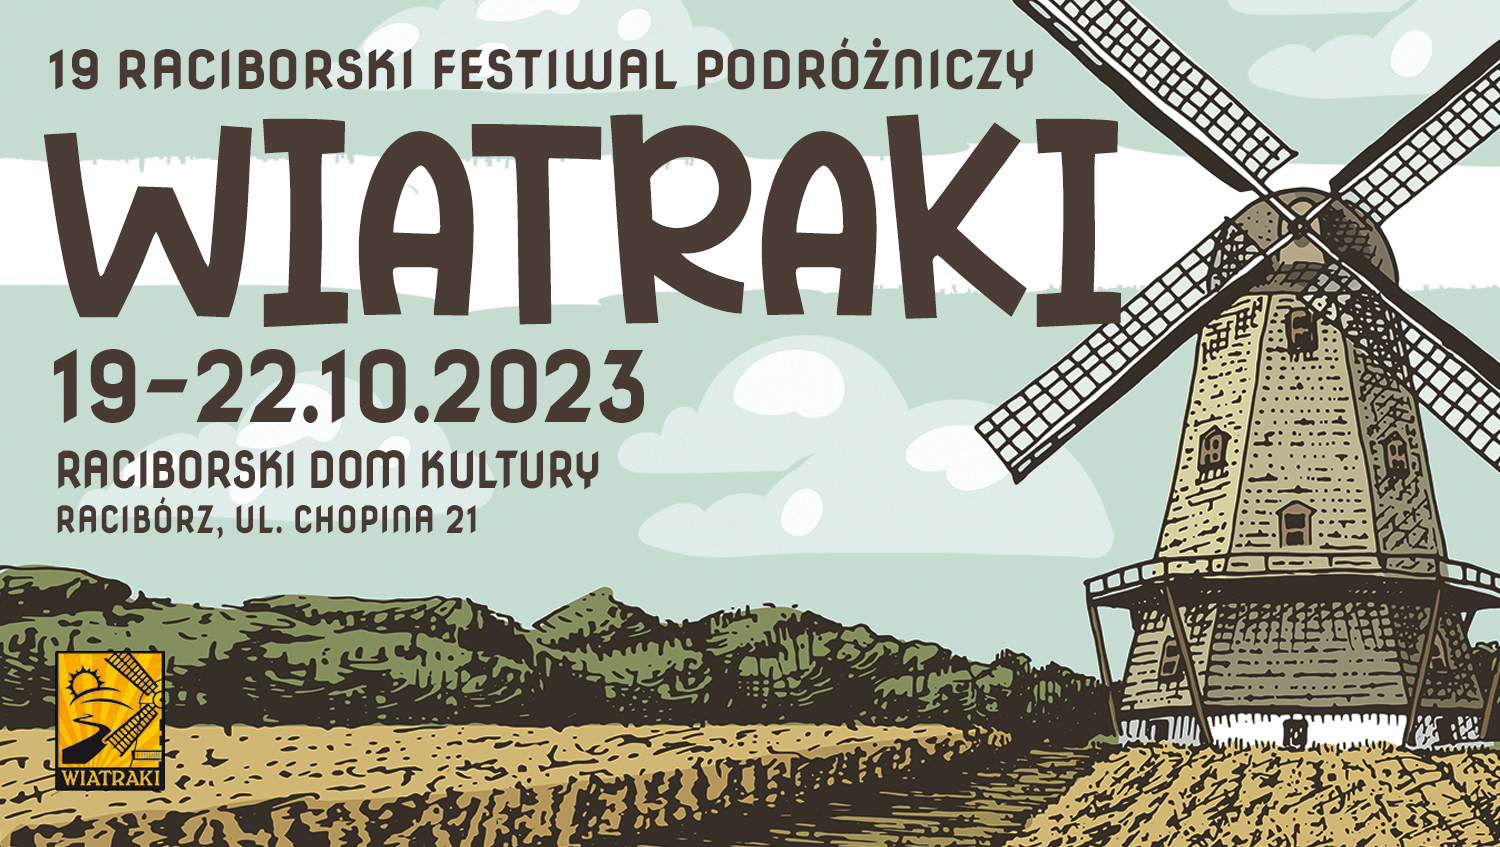 19. Raciborski Festiwal Podróżniczy „Wiatraki”